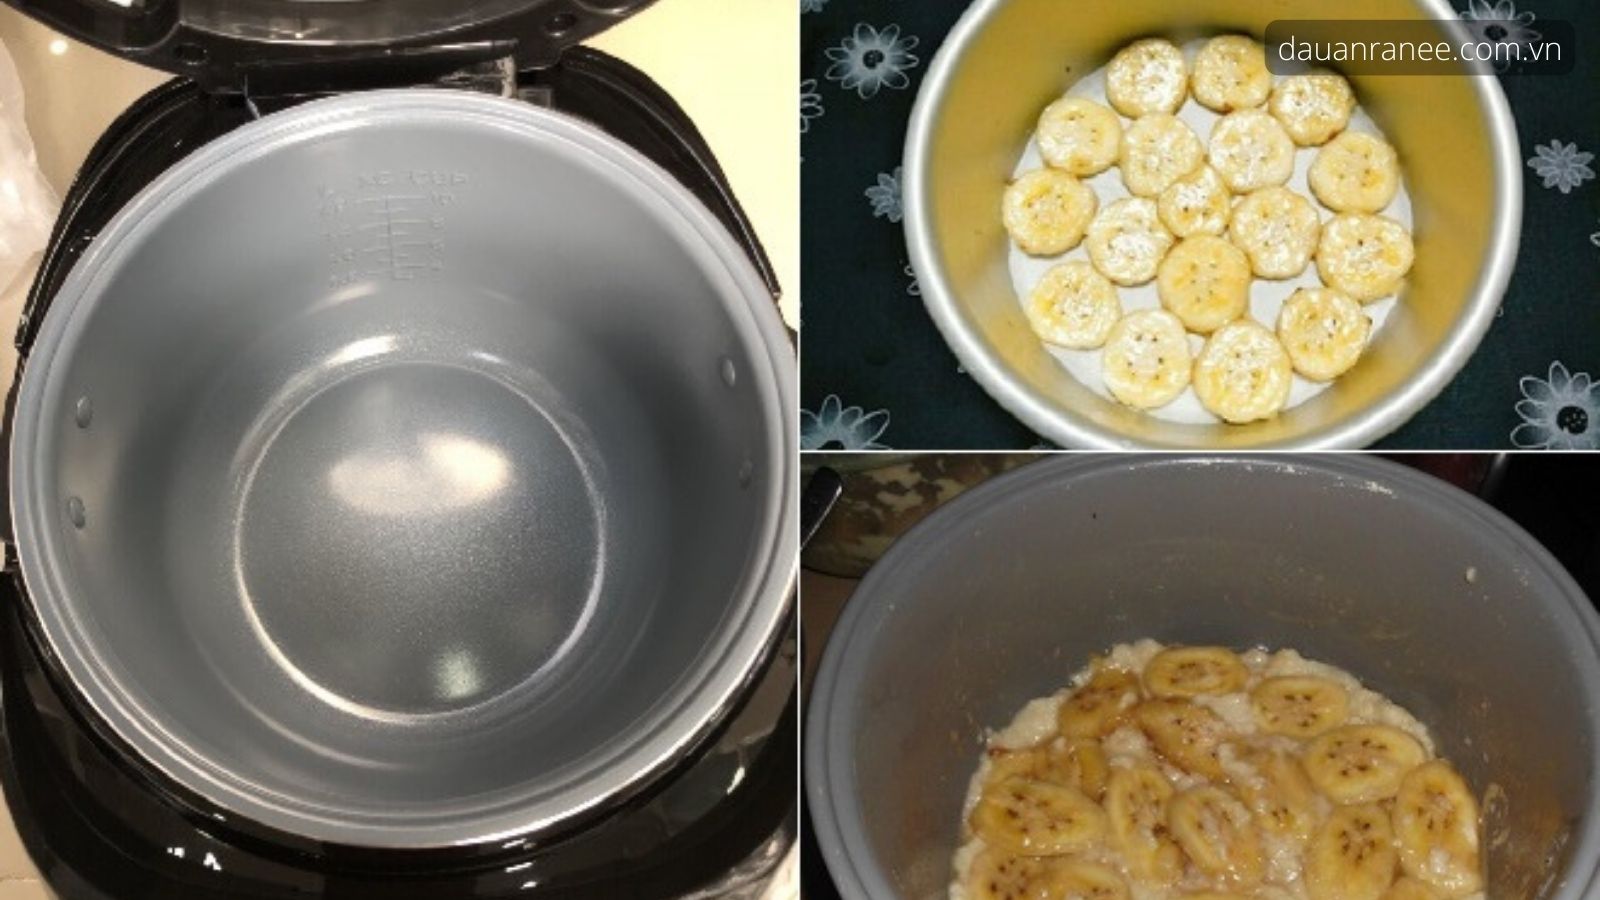 Quá trình thực hiện cách làm bánh chuối hấp bột cơ bản